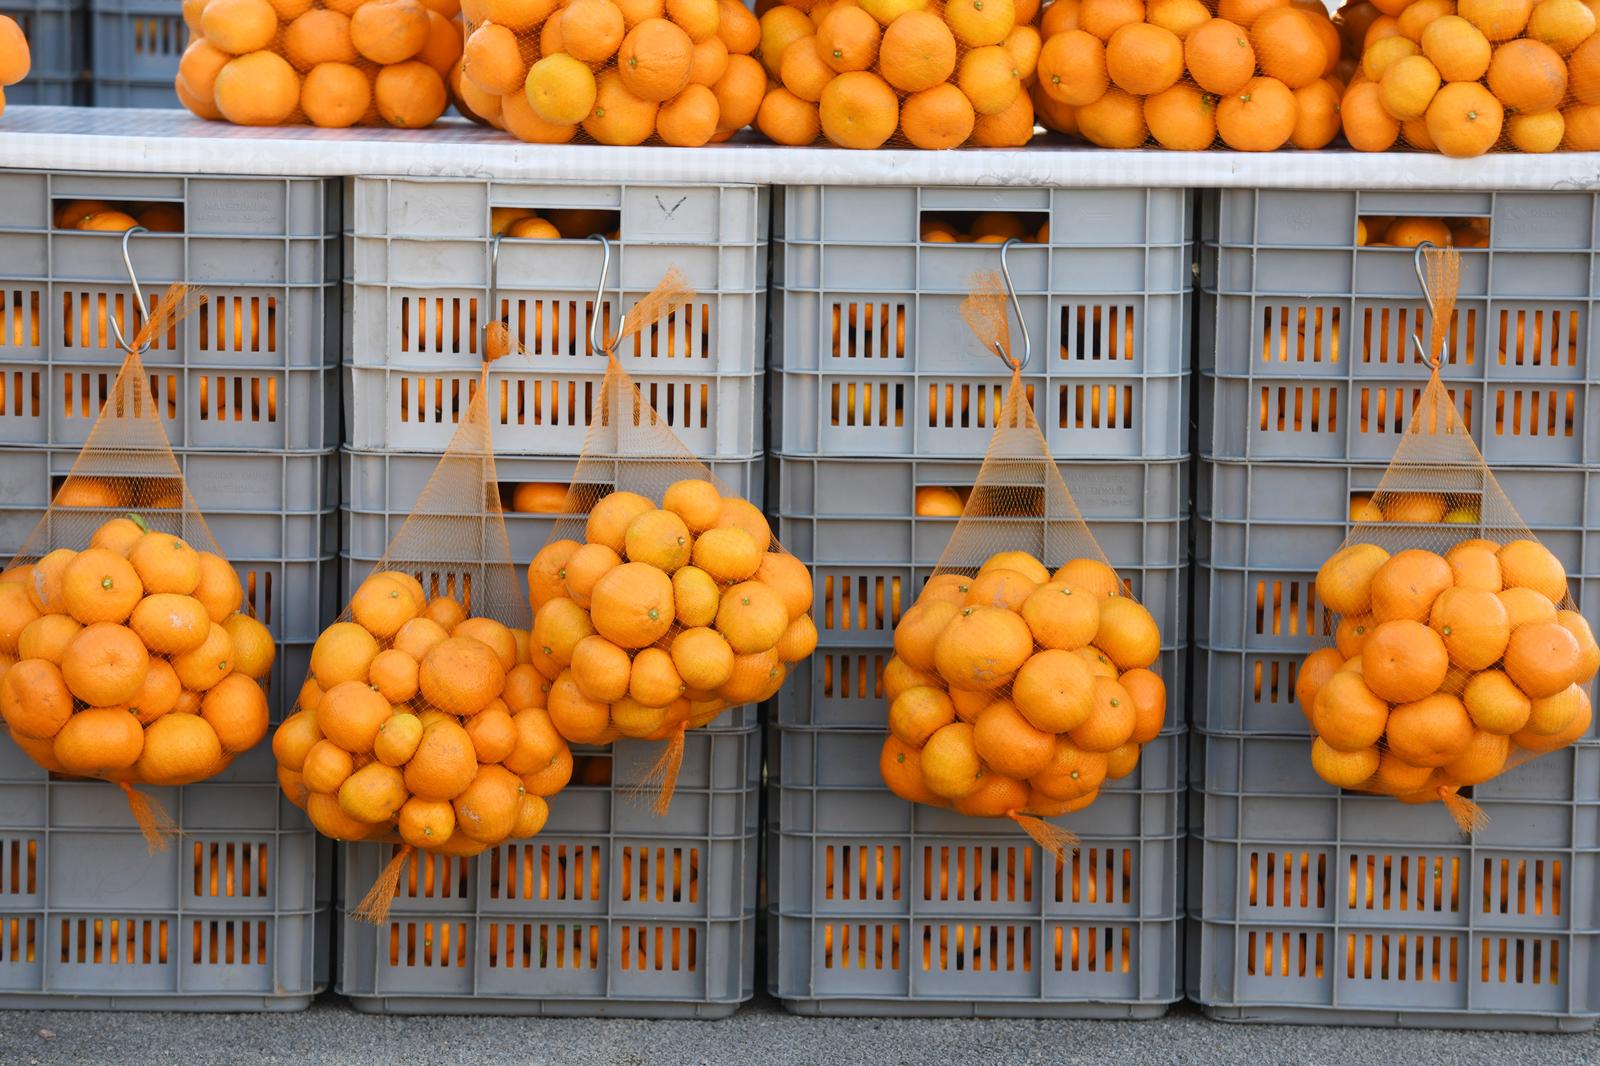 10.11.2020., Sibenik - Proizvodjaci iz doline Neretve na sve vise lokacija po Dalmaciji dovoze i prodaju svoje svjeze agrume. U ponudi su mandarine, klementine i limun.
Photo: Hrvoje Jelavic/PIXSELL